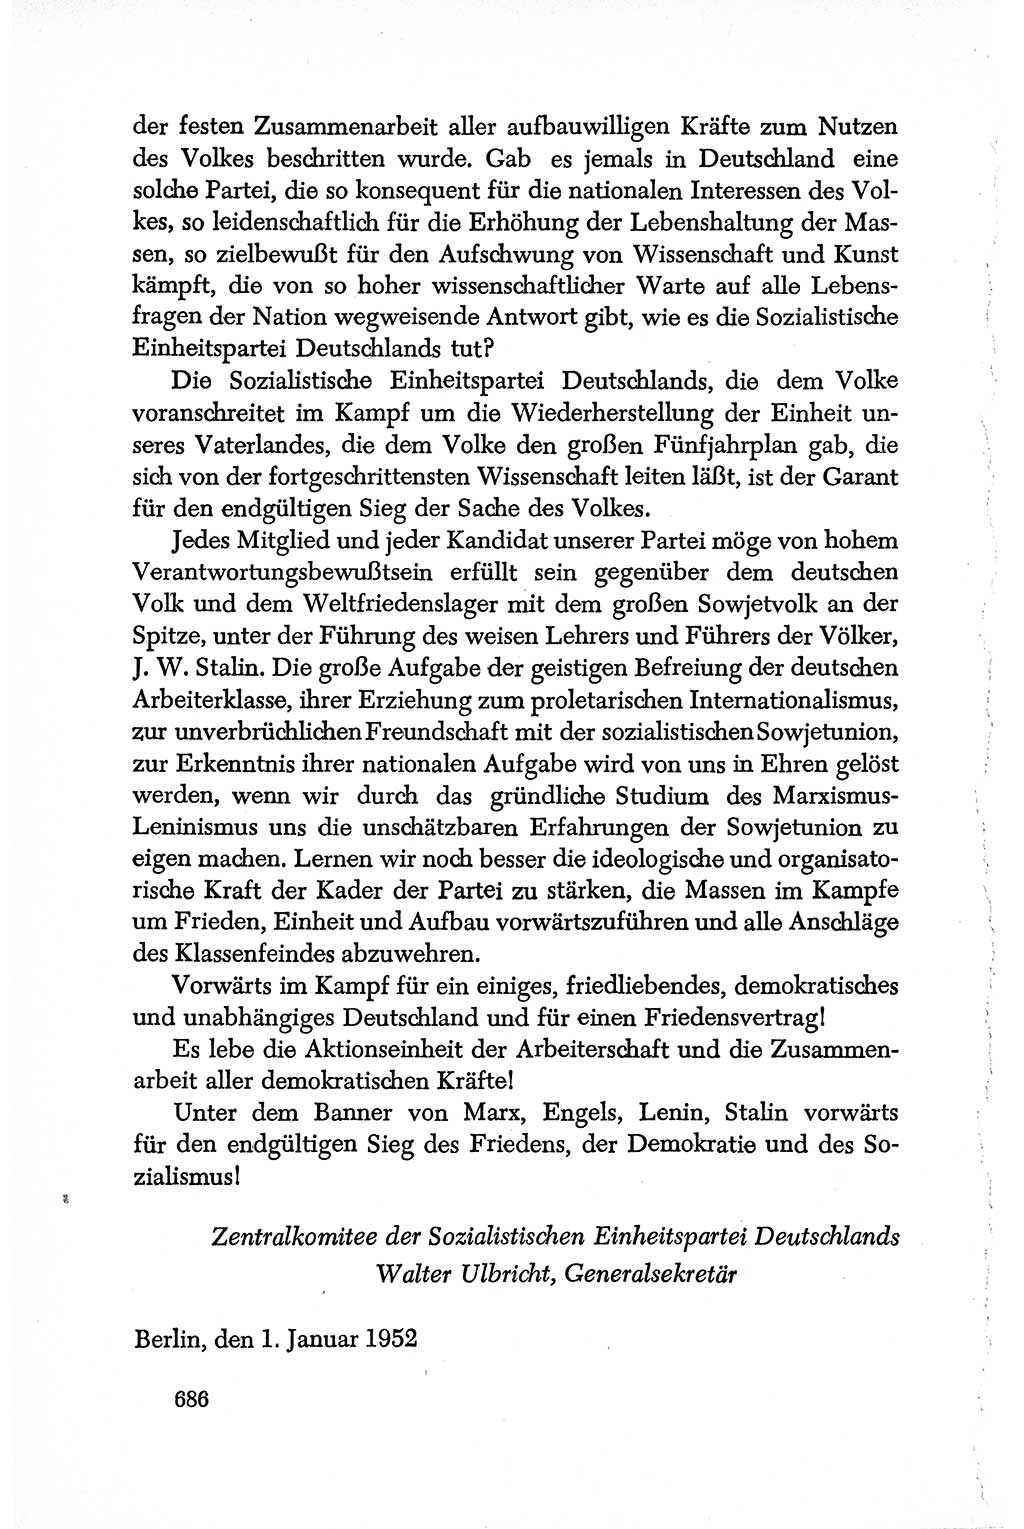 Dokumente der Sozialistischen Einheitspartei Deutschlands (SED) [Deutsche Demokratische Republik (DDR)] 1950-1952, Seite 686 (Dok. SED DDR 1950-1952, S. 686)